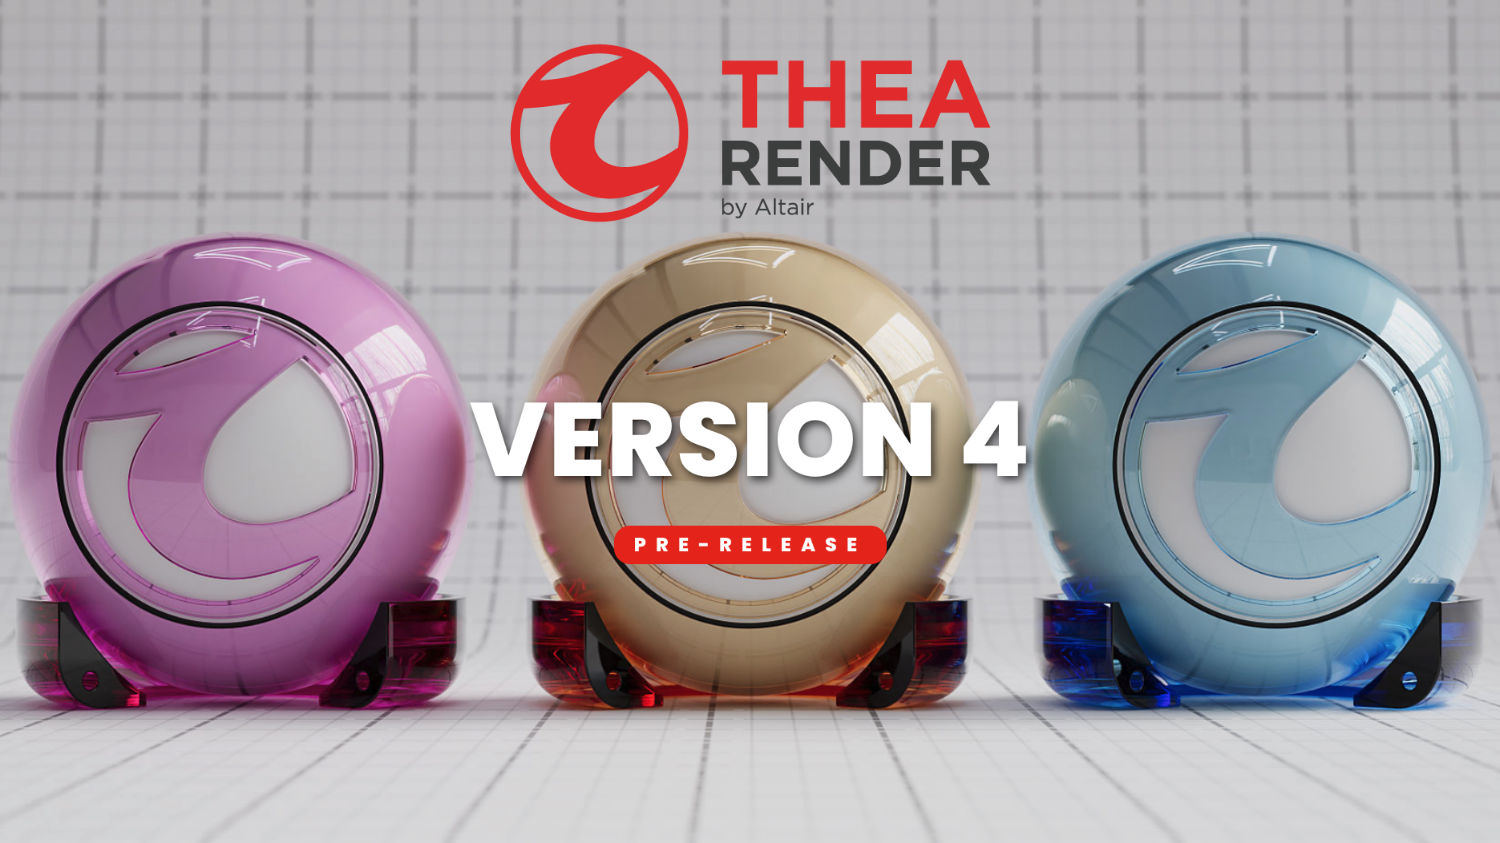 Thea Render v4.0 pre-release beschikbaar